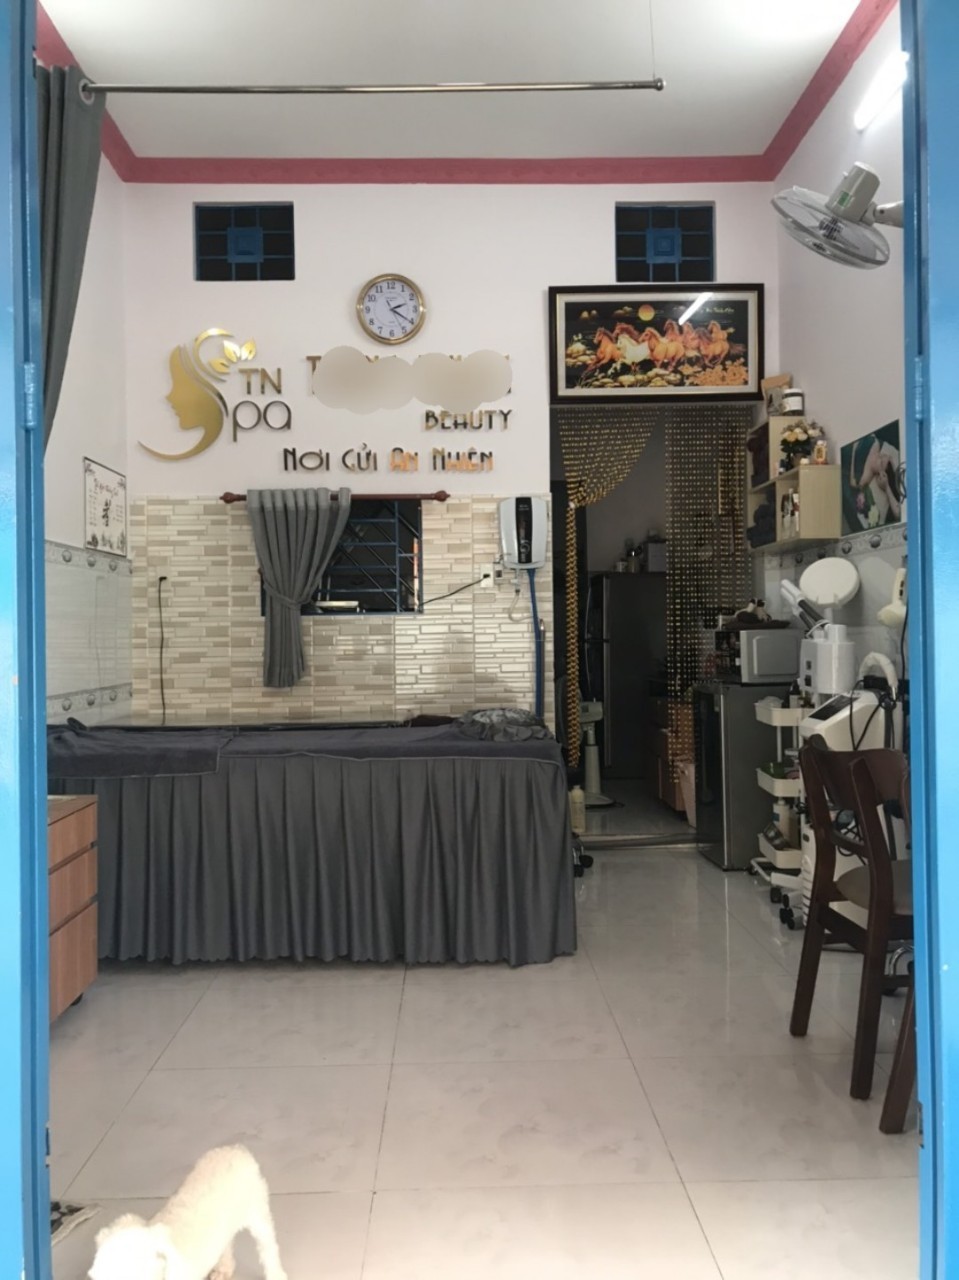 Cần sang nhanh tiệm SPA kinh doanh gần Nguyễn Sơn 35 triêu con tl